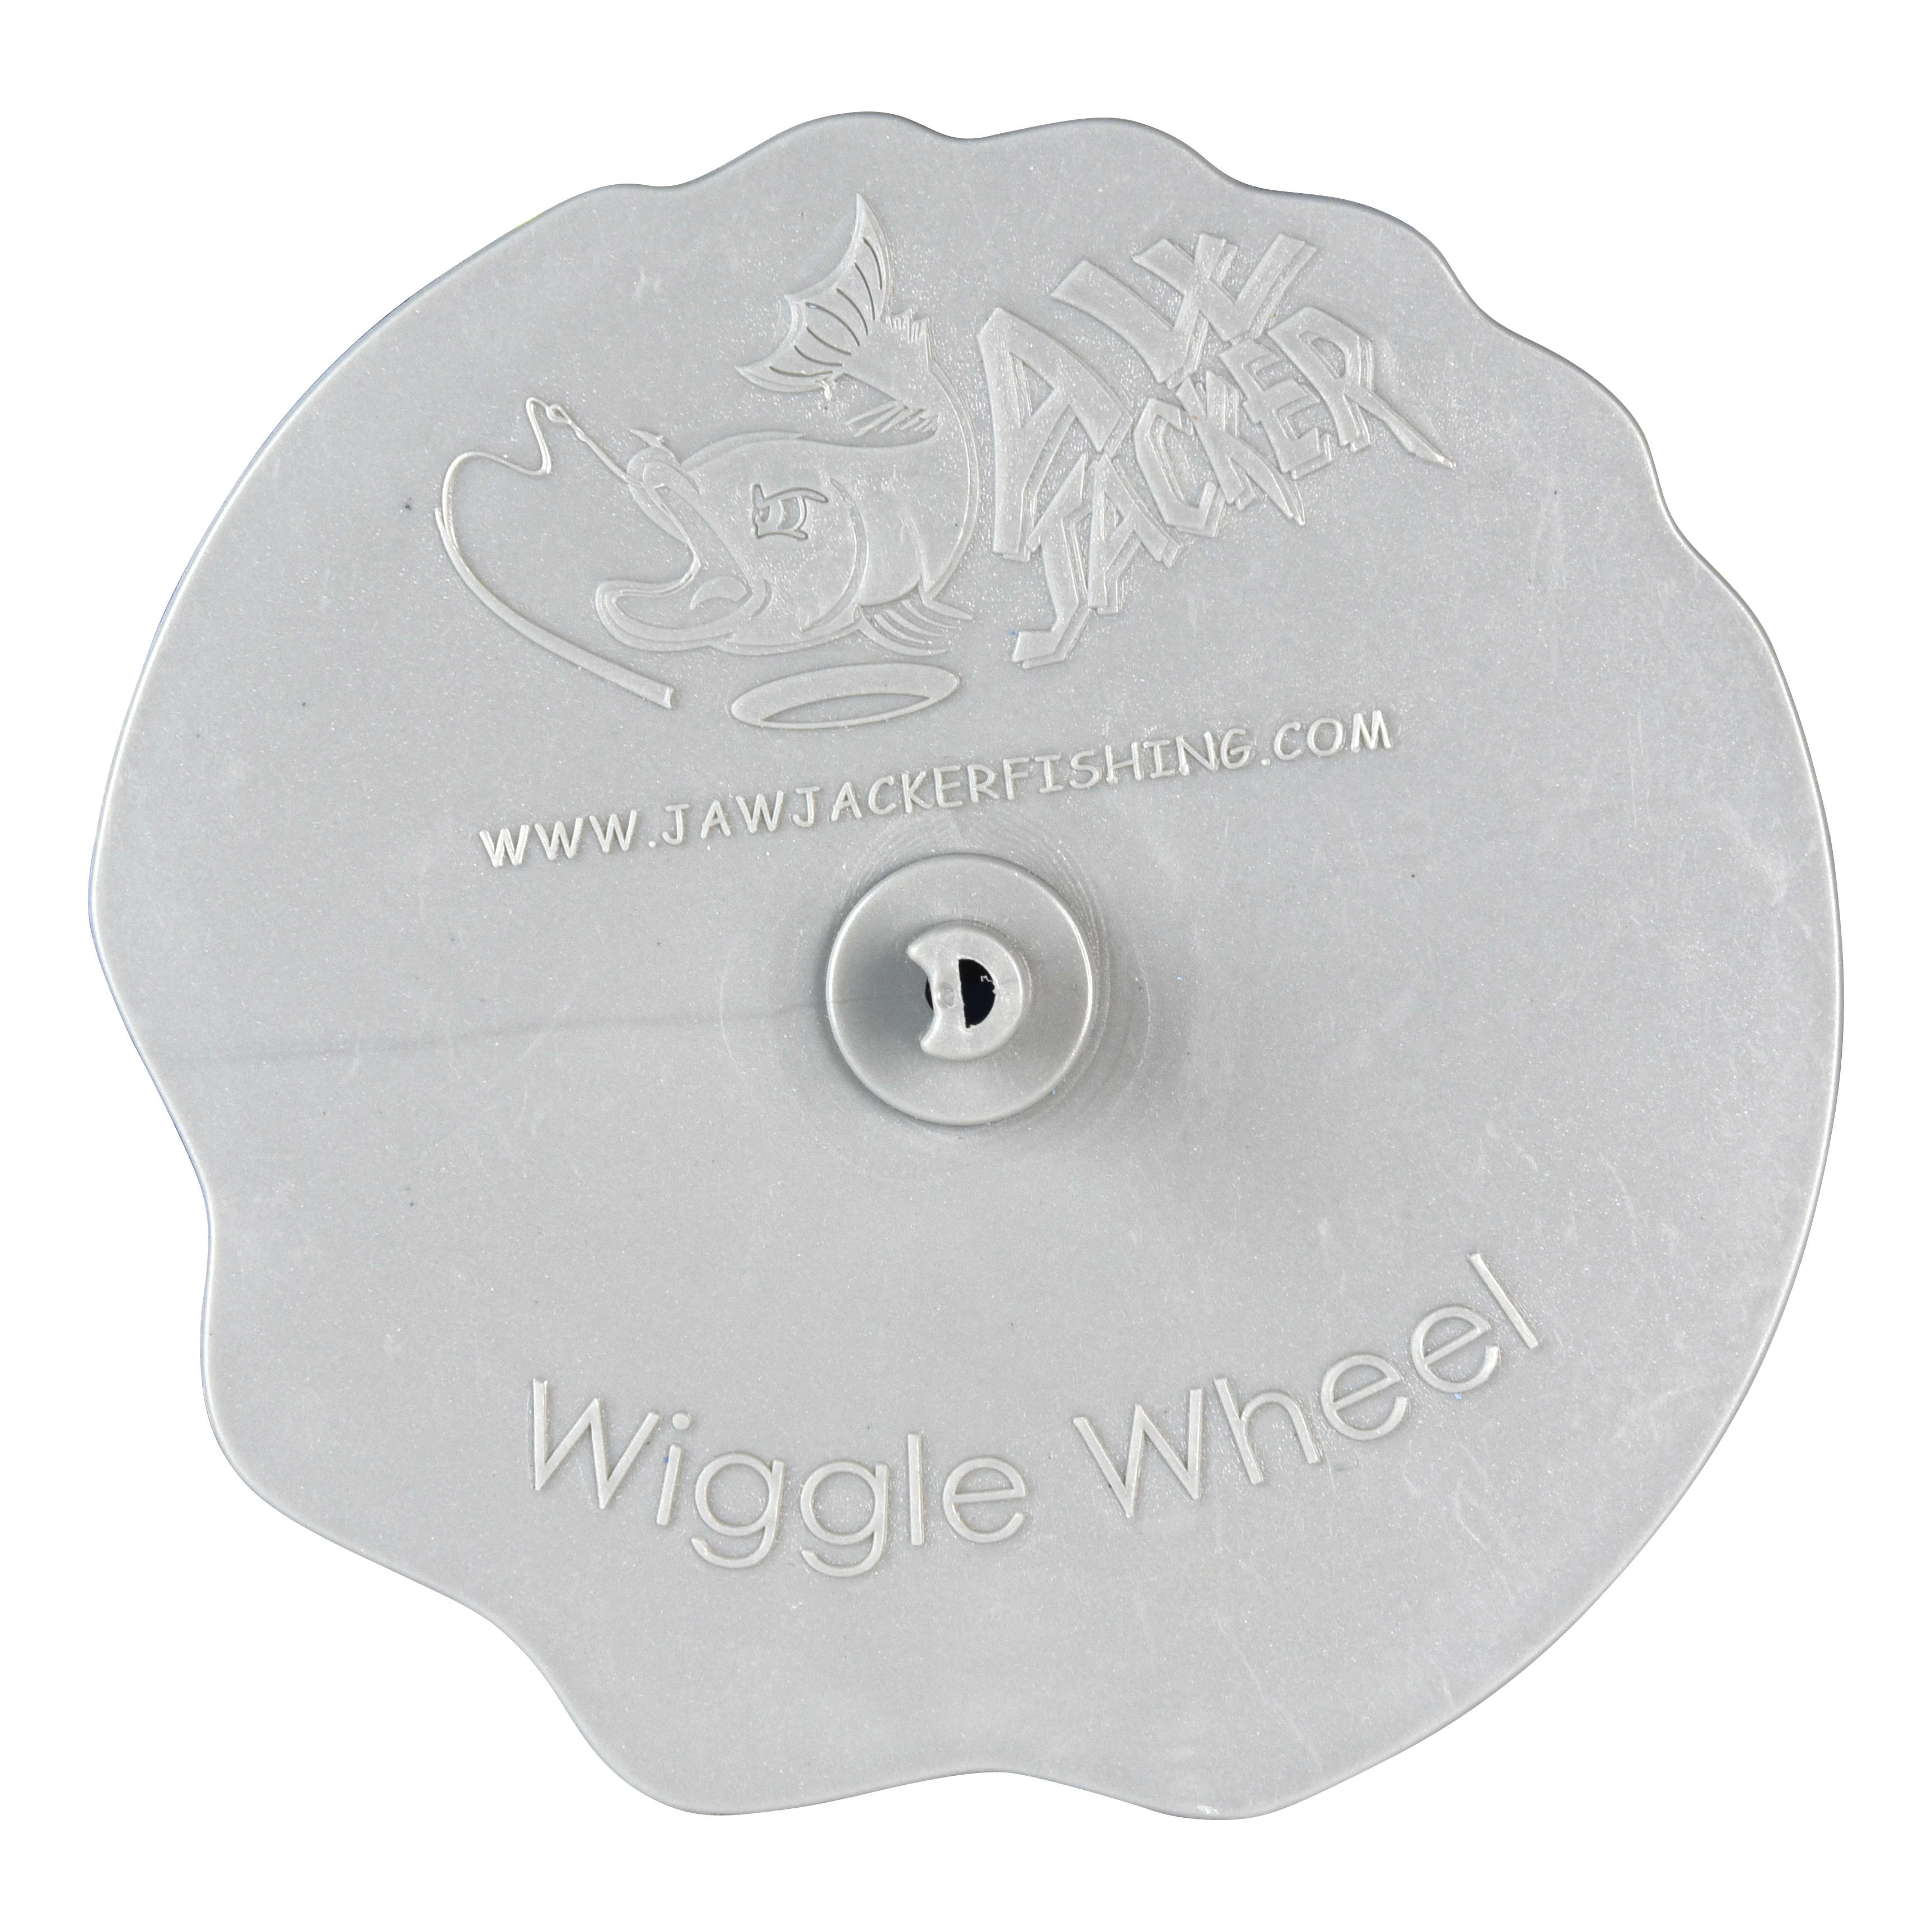 Wiggle Wheel